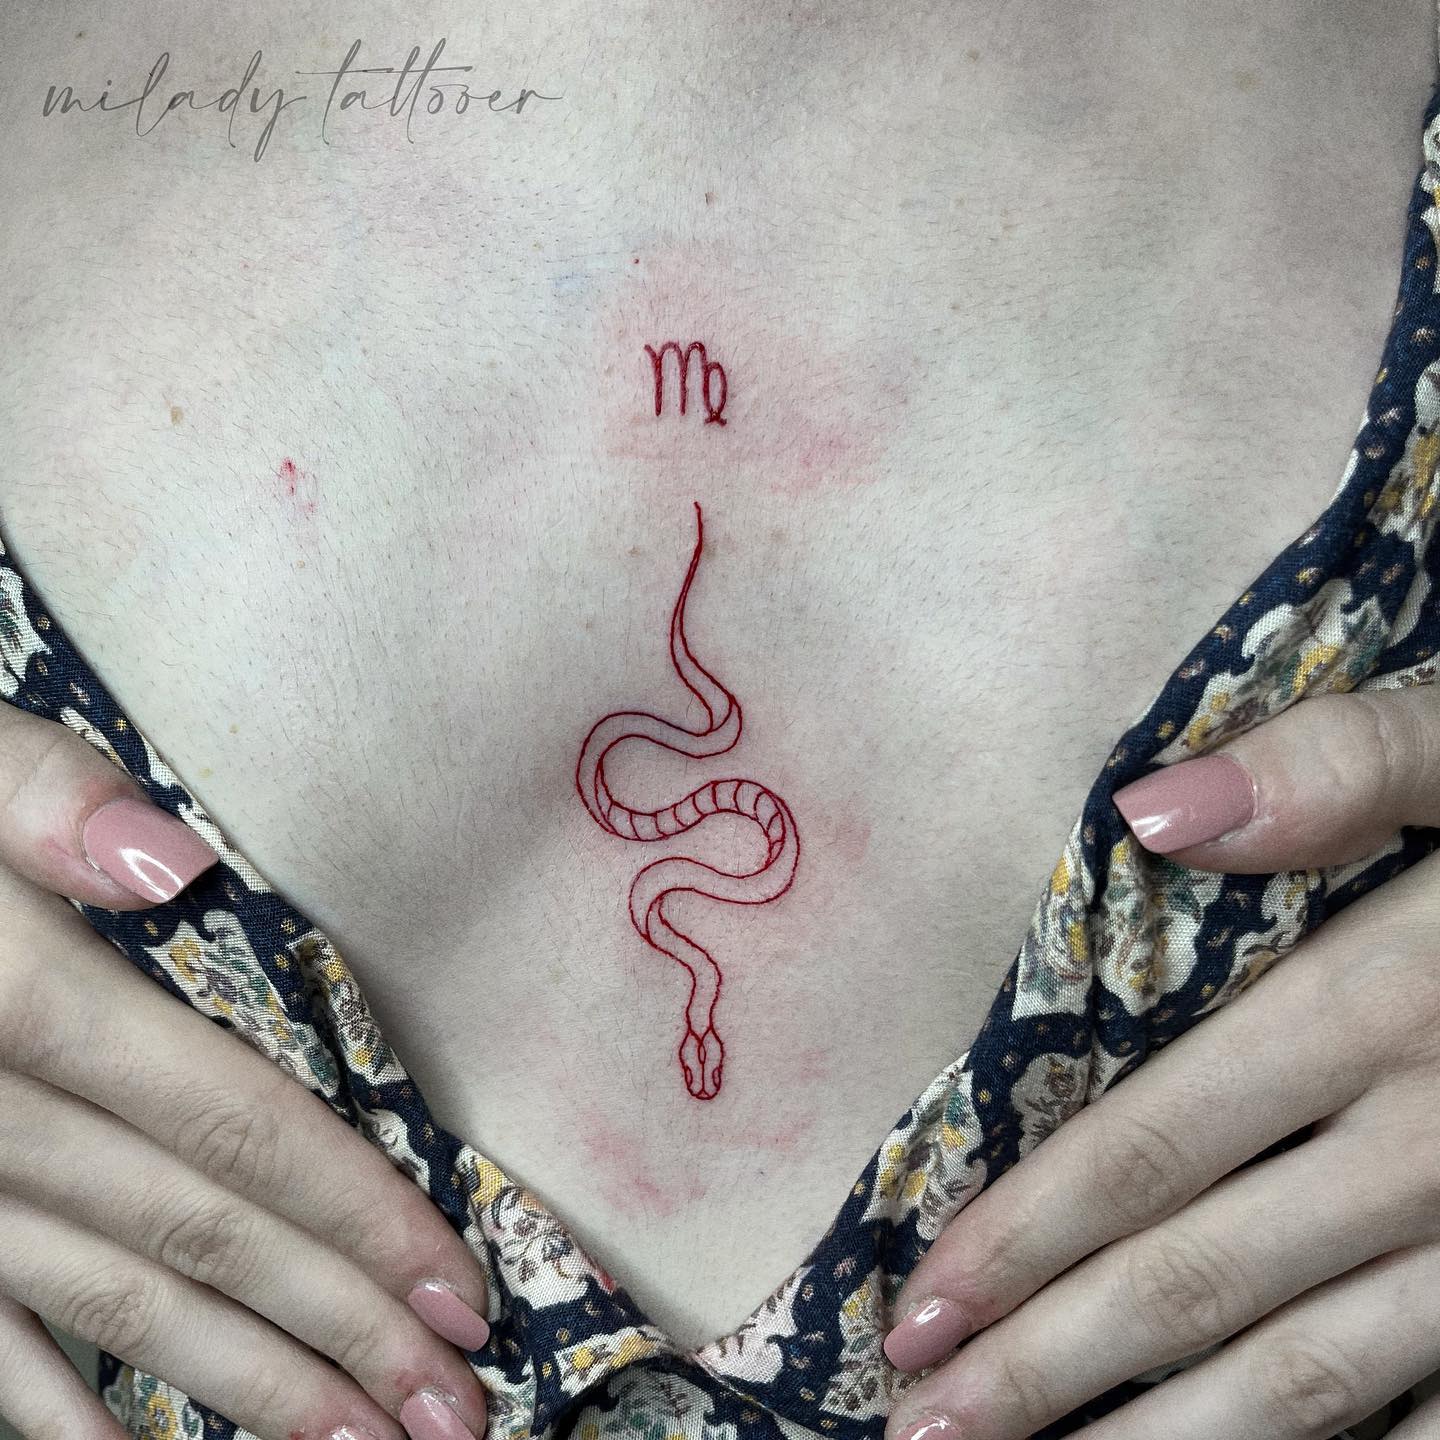 Serpiente y tatuaje de Virgo.